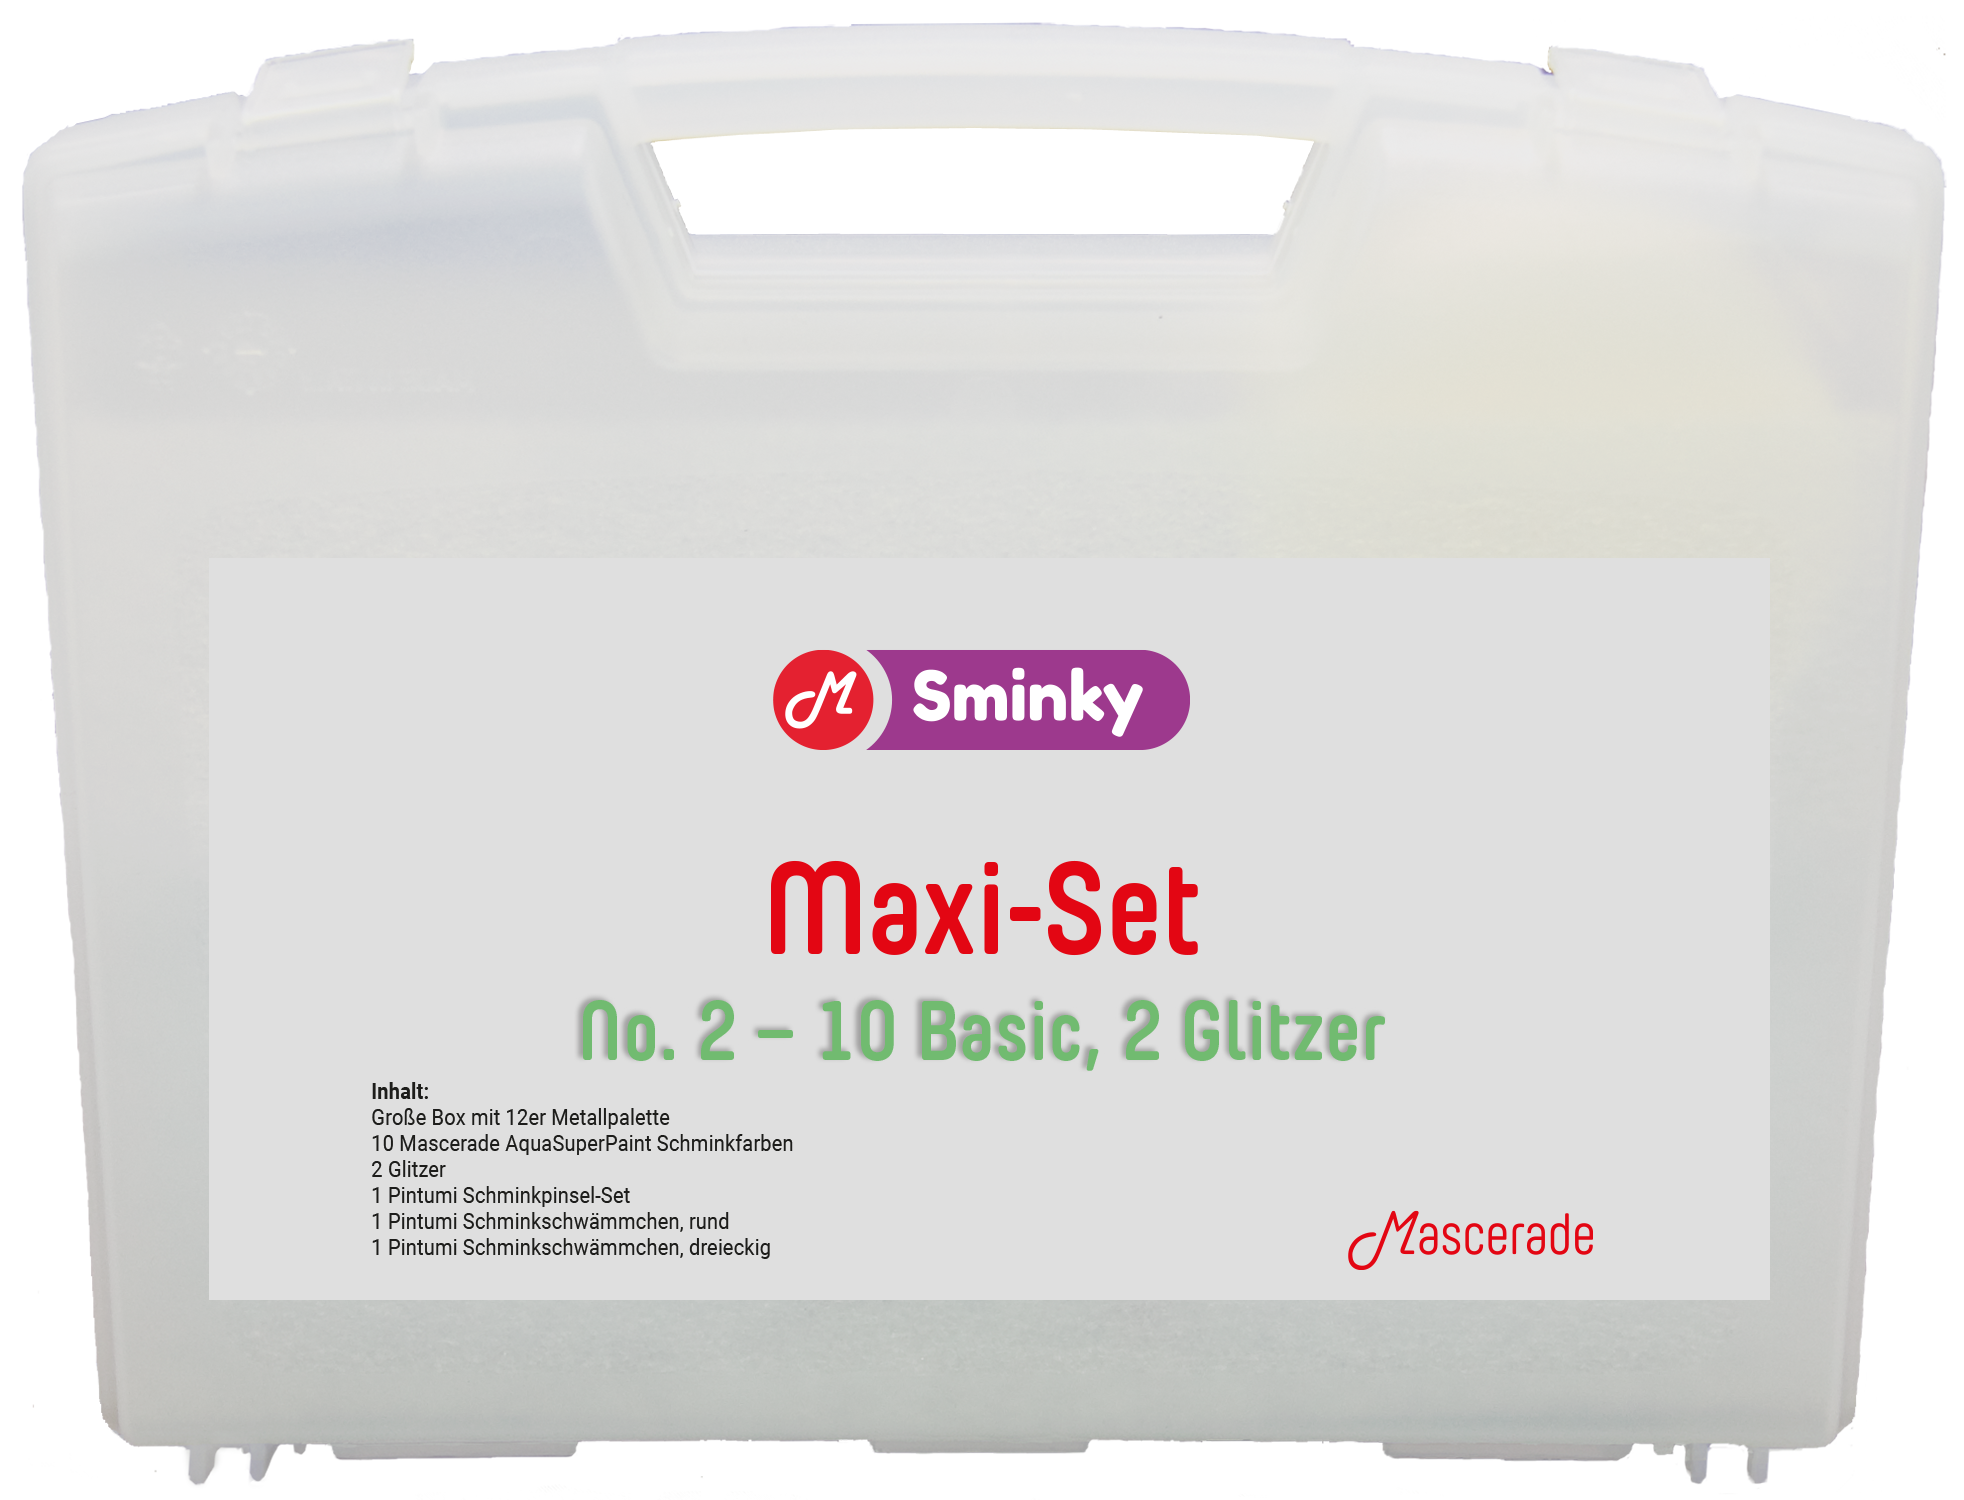 Mascerade Sminky Maxi-Set No.2 mit AquaSuperPaint Schminkpalette 2, SET-MAXI-2